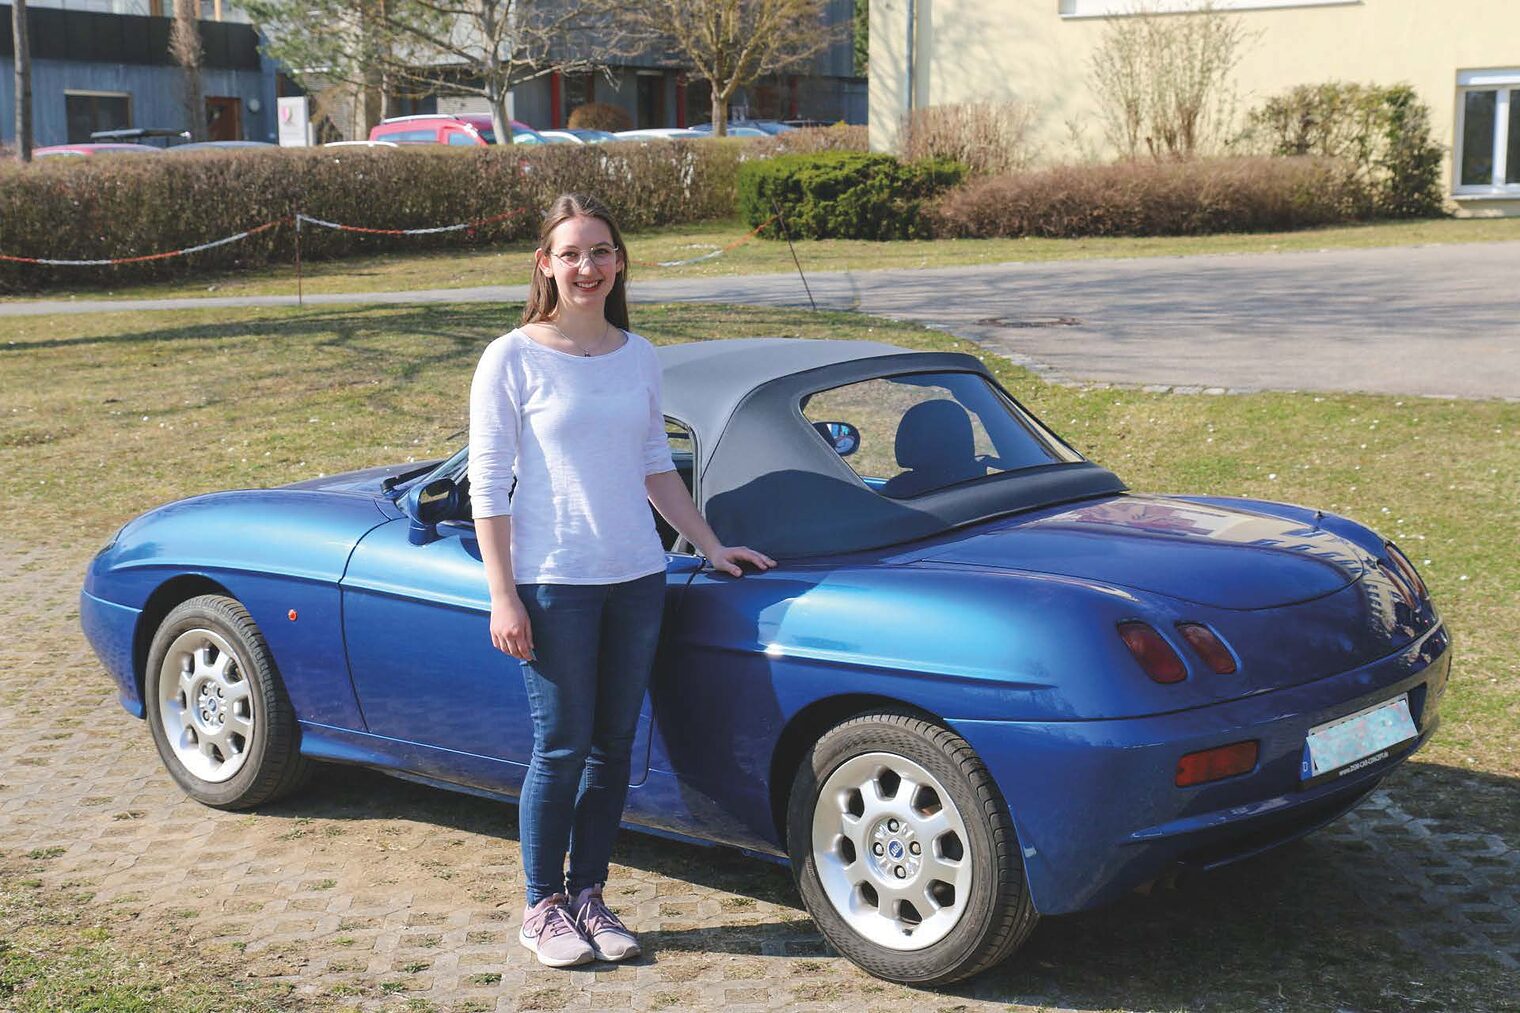 Regina Angermeier ist im Bereich Fahrzeugausstattung spezialisiert. Für ihre Meisterprüfung hat sie das Verdeck, den Sitzbezug und das Lenkrad eines 1998 Fiat Barchetta erarbeitet.